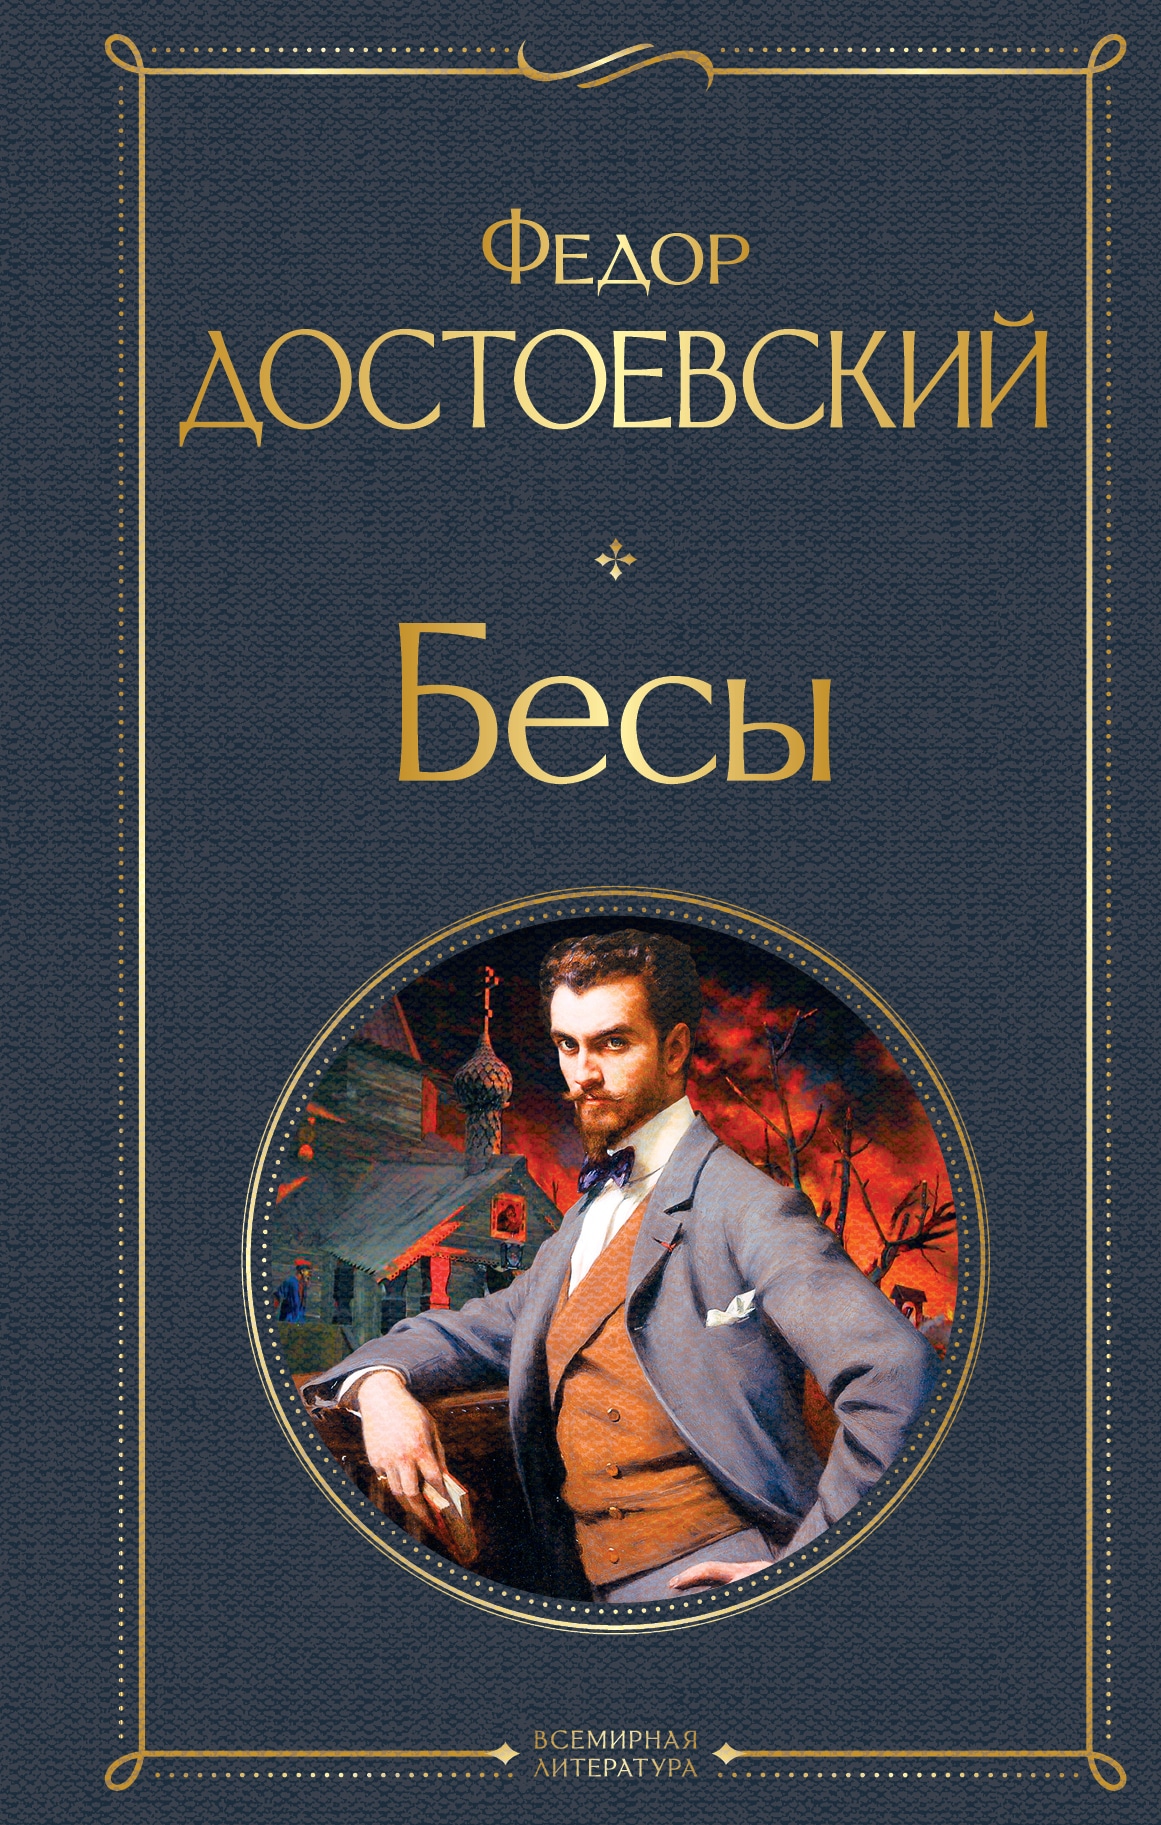 Книга «Бесы» Федор Достоевский — 5 июля 2021 г.